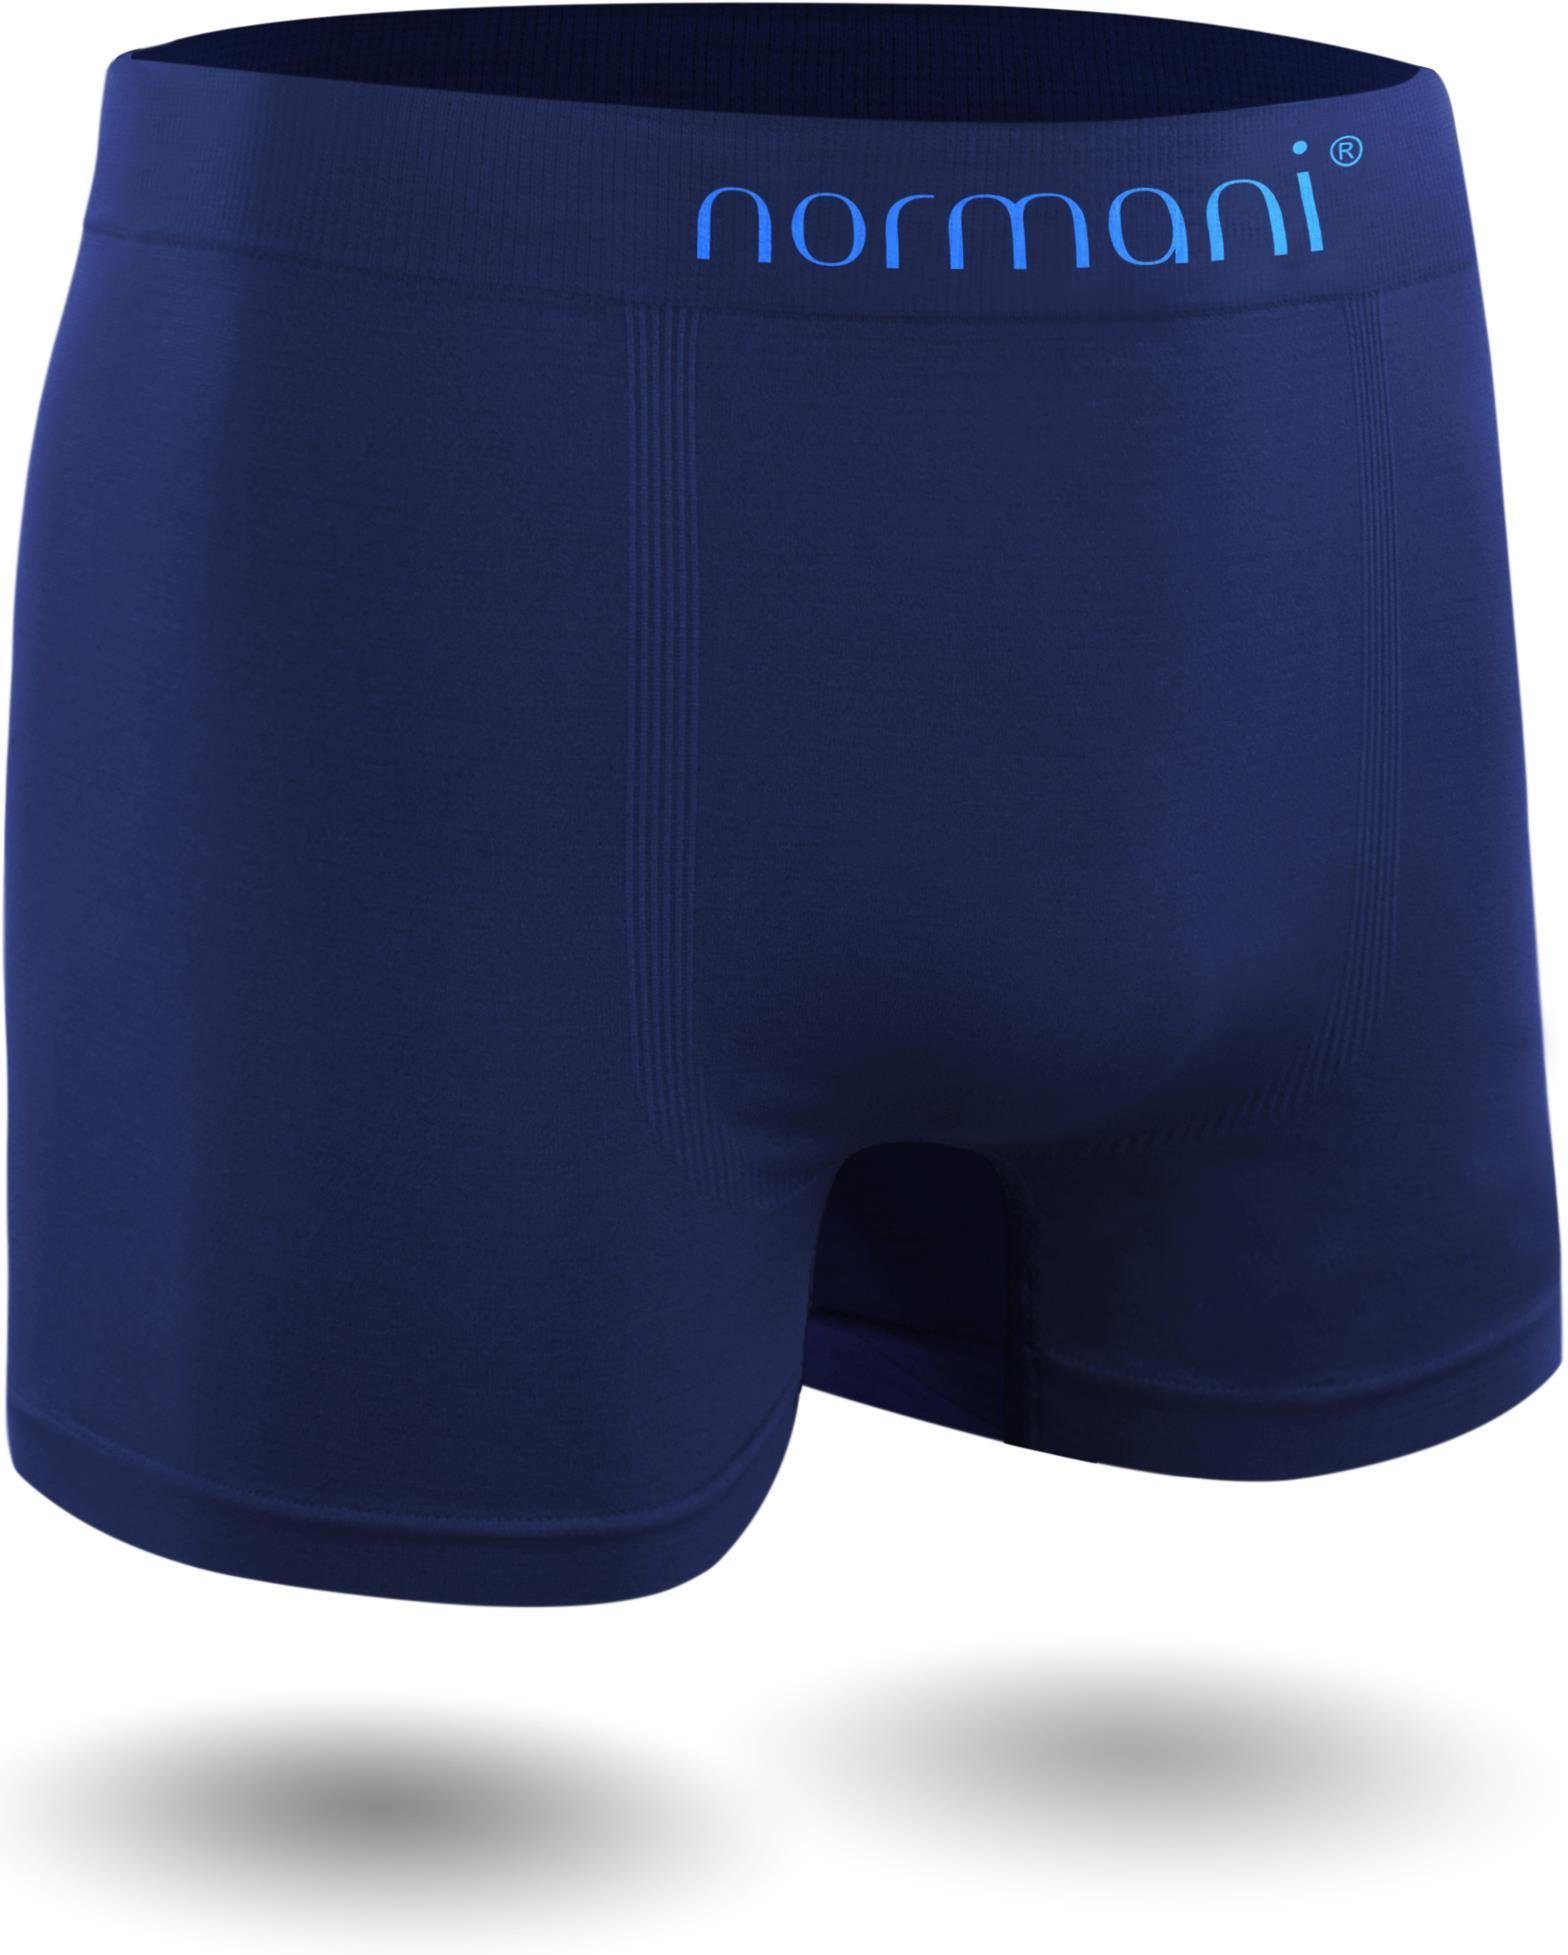 Boxer Retro schnell aus normani Sport Herren trocknendem Material Unterhosen Blau